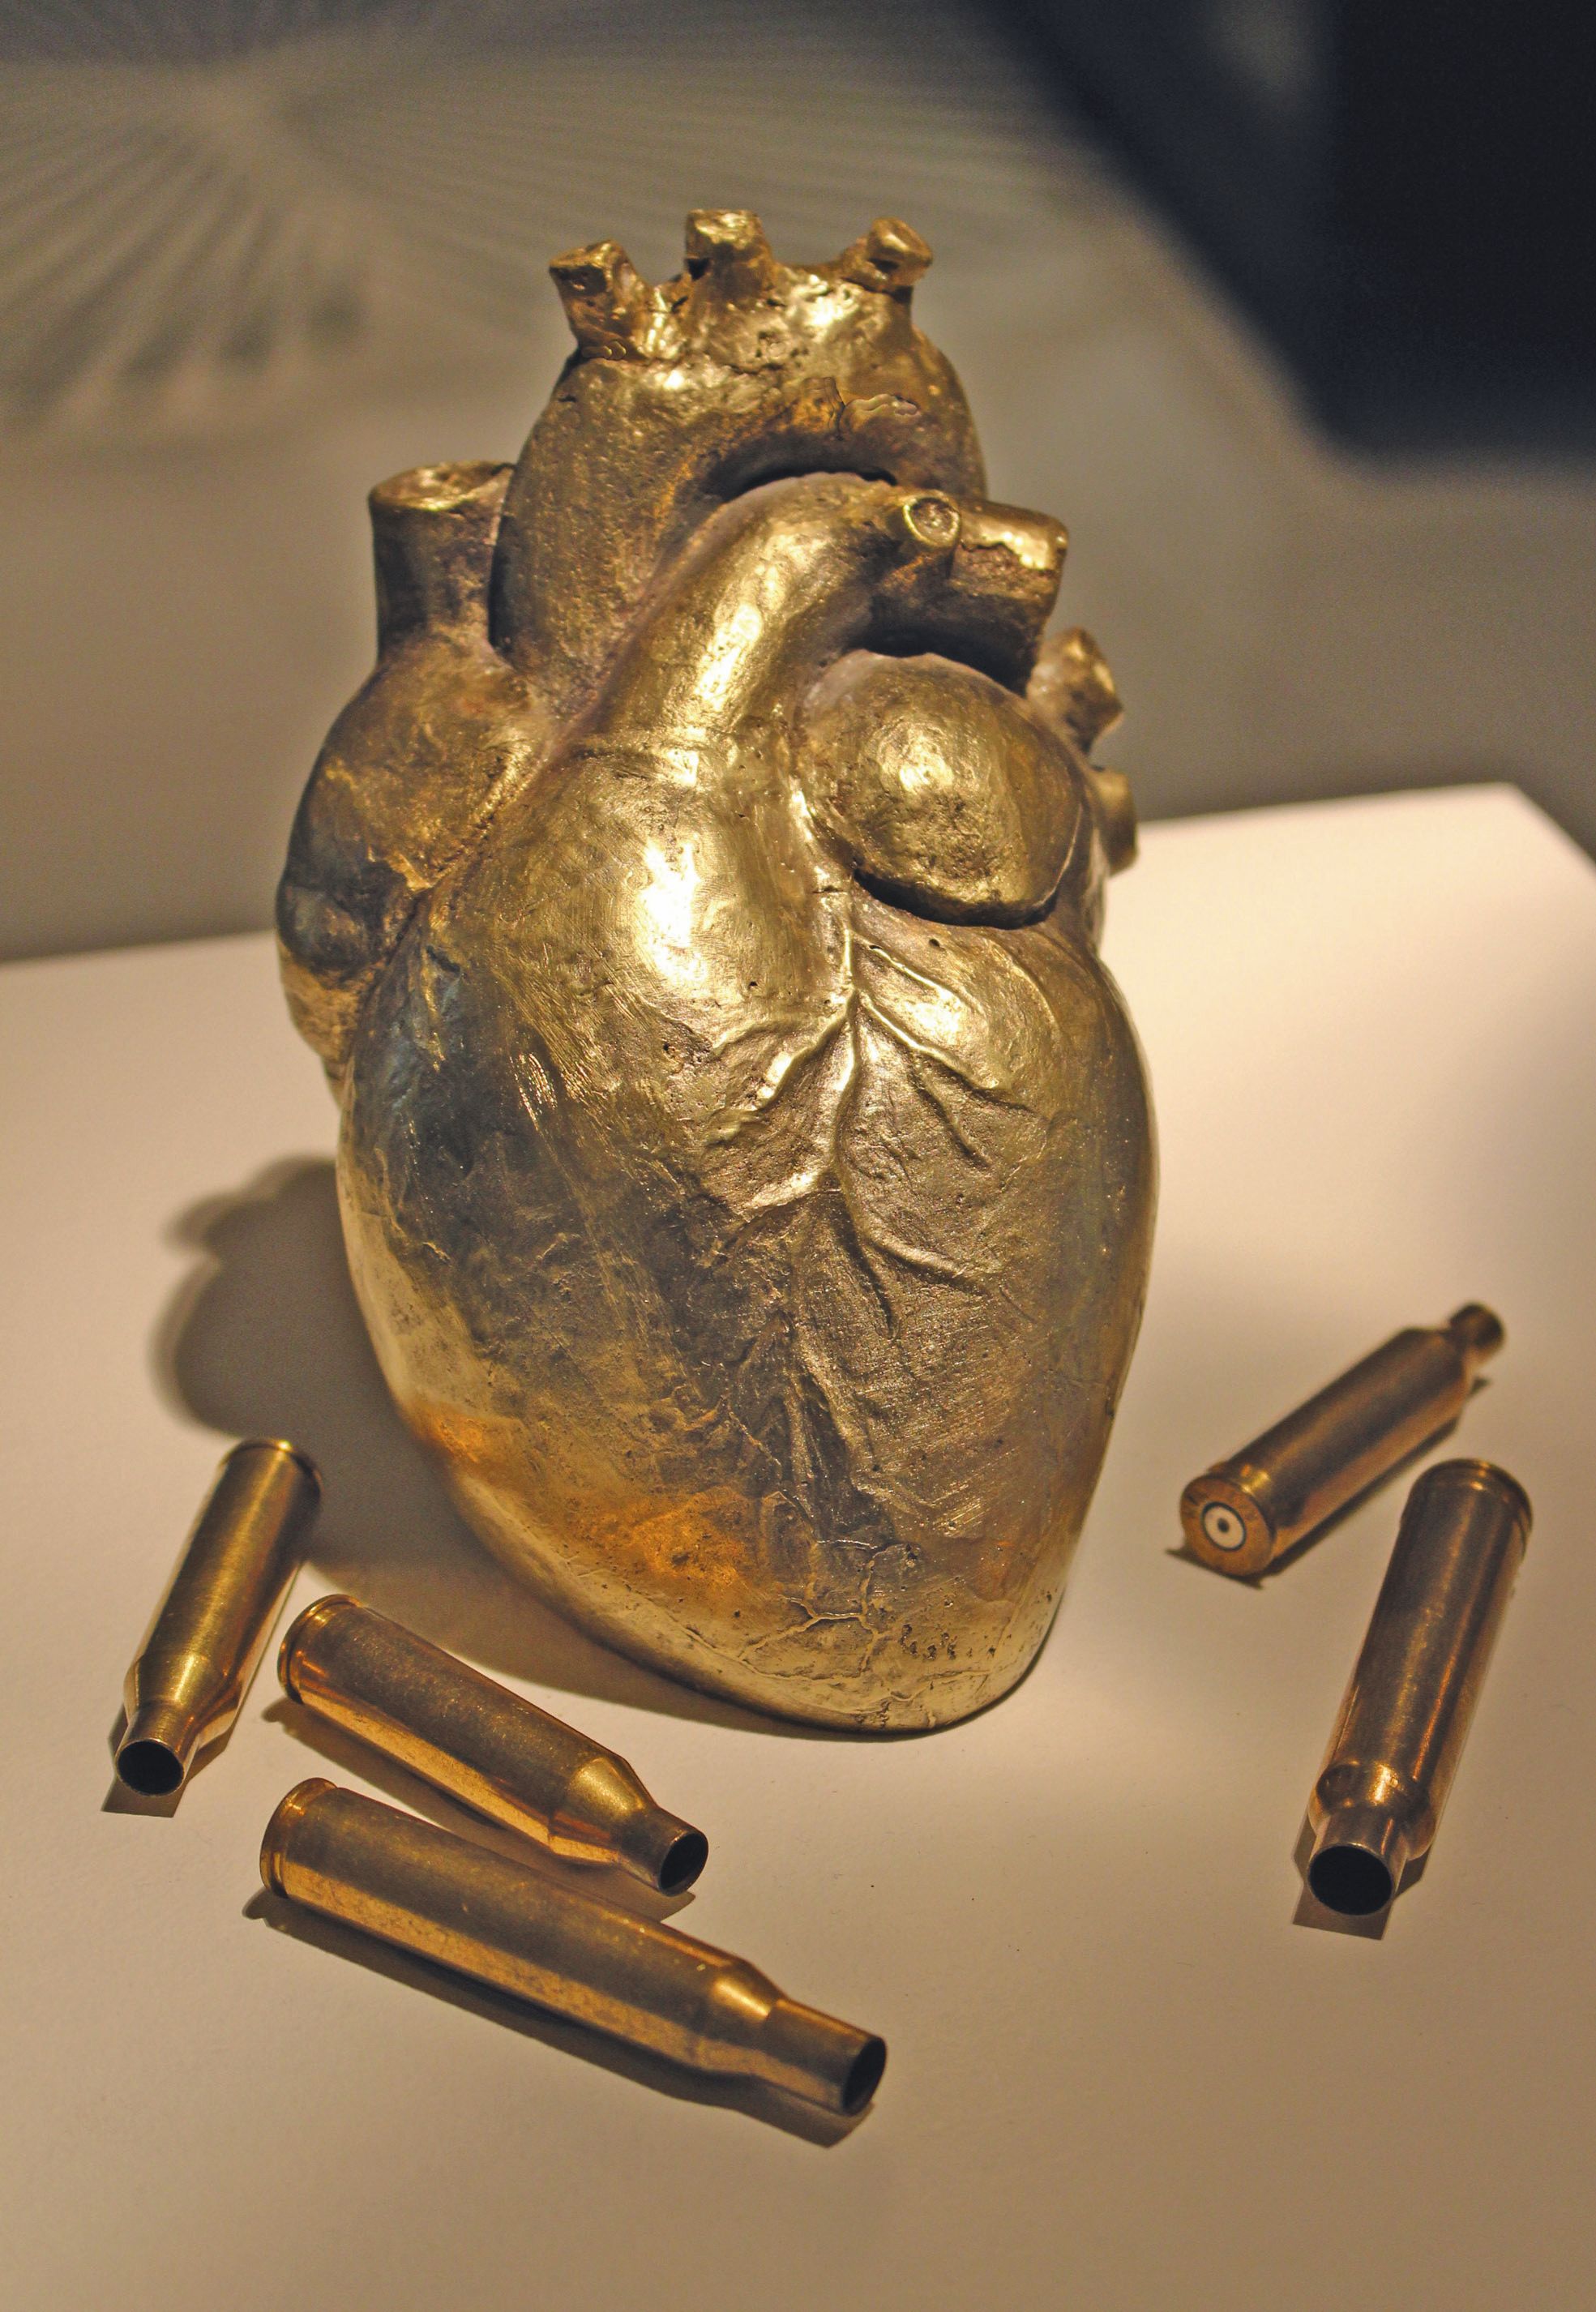 Le cœur de Midas, réalisé en bronze, est l'une des œuvres engagées de l'exposition qui interrogent sur nos modes d'exploitation.